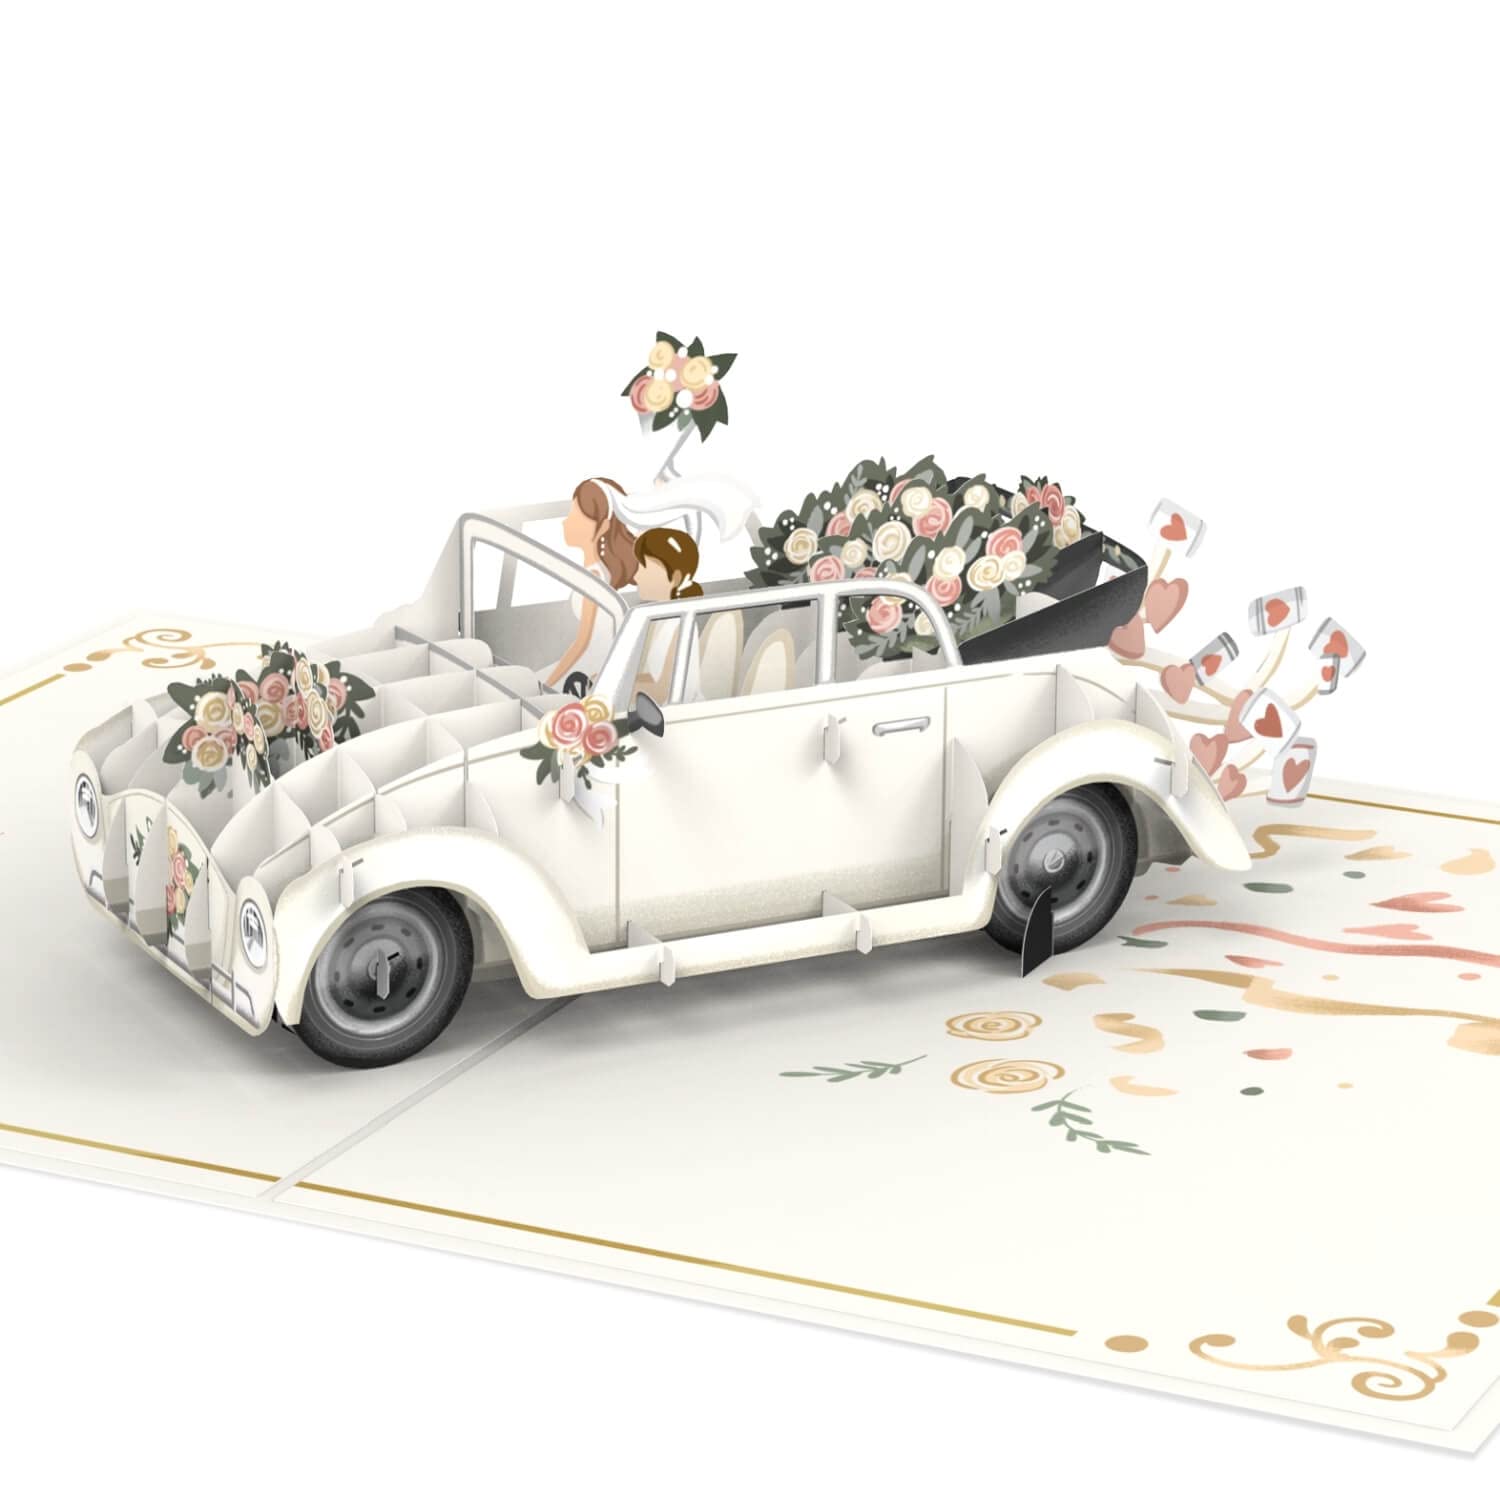 Populaire papercrush® Carte pop-up voiture de mariage femme et femme [NOUVEAU] – Carte de mariage 3D pour couple de lesbiennes, carte de vœux élégante pour mariage de 2 femmes, cadeau de mariage ou cadeau en sNUq7Wexr en France Online